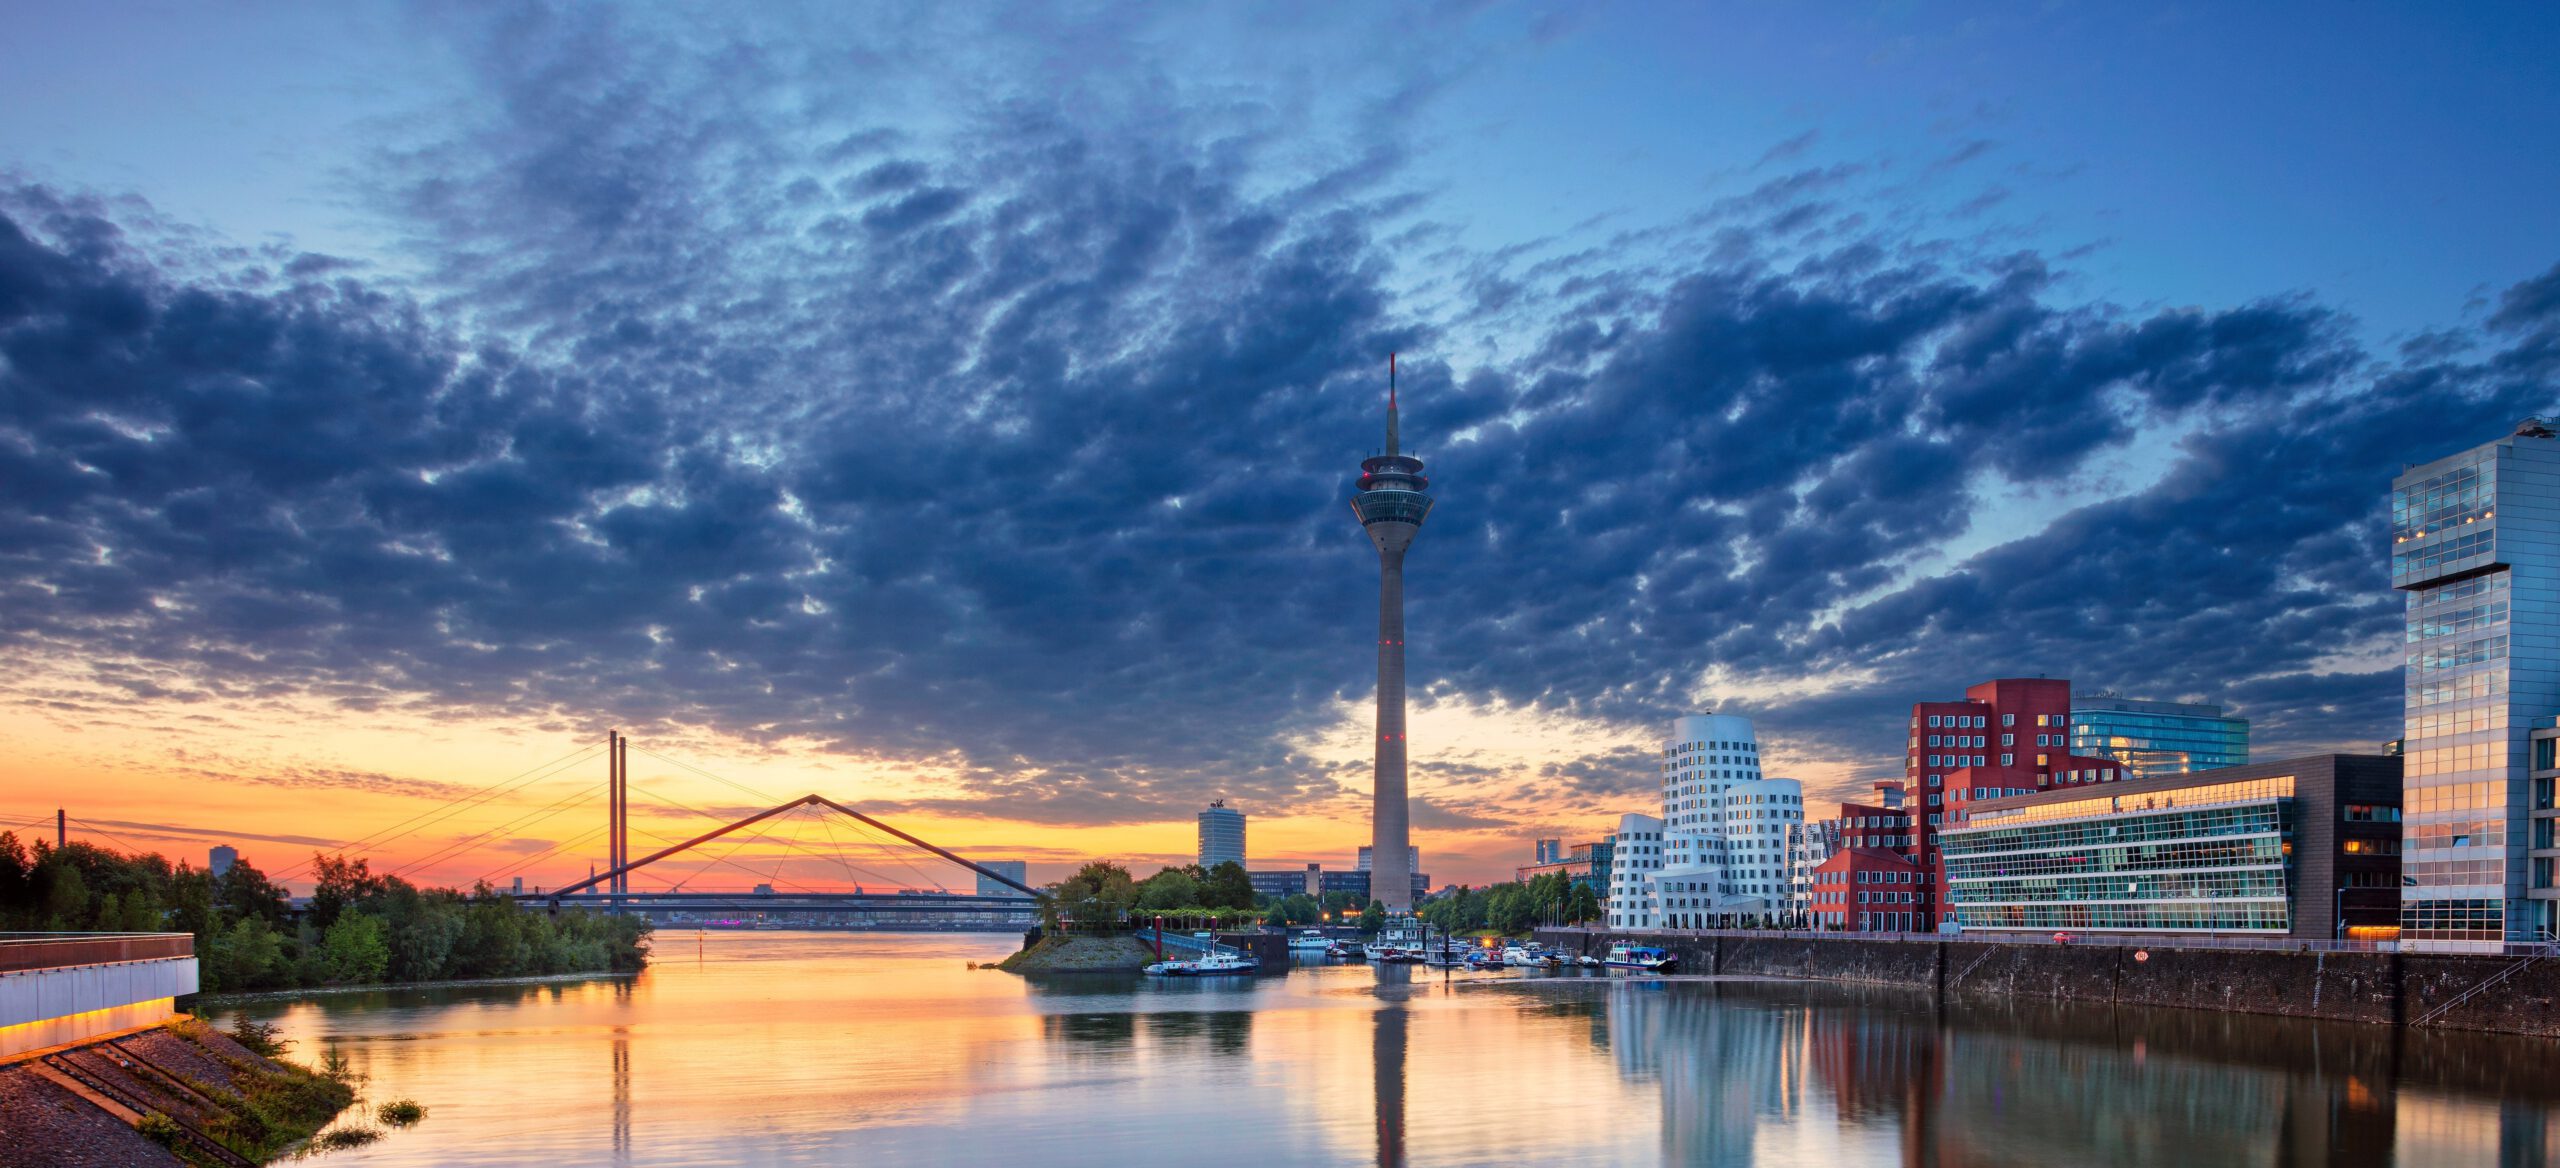 Düsseldorf, Germany. Cityscape image of Düsseldorf, Germany wi